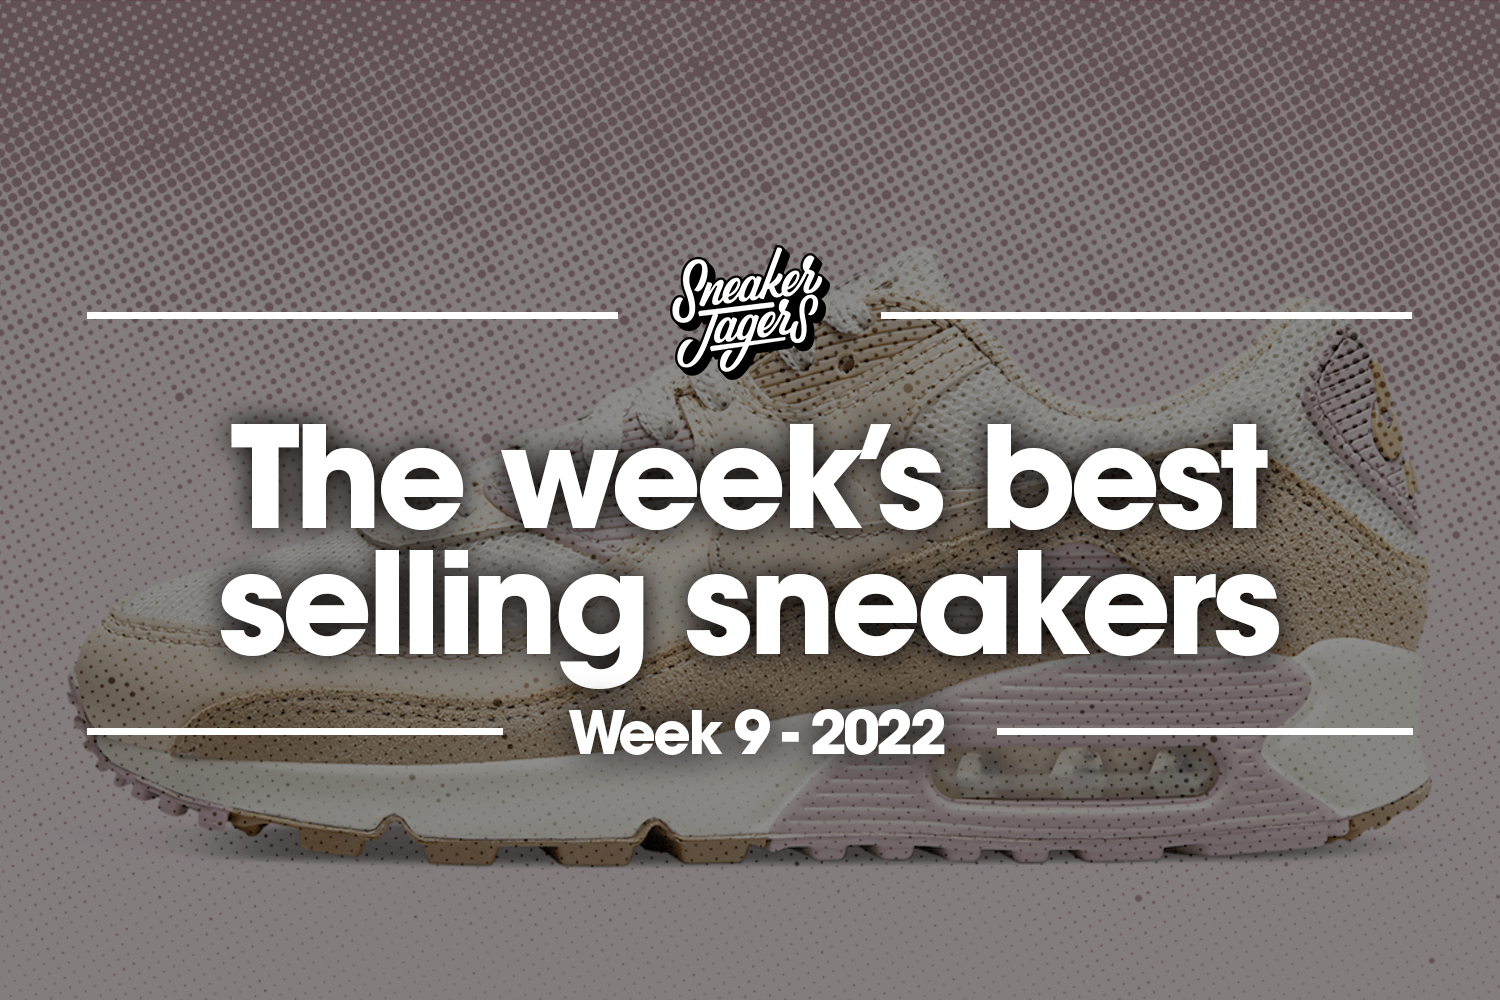 De 5 bestverkochte sneakers van week 9